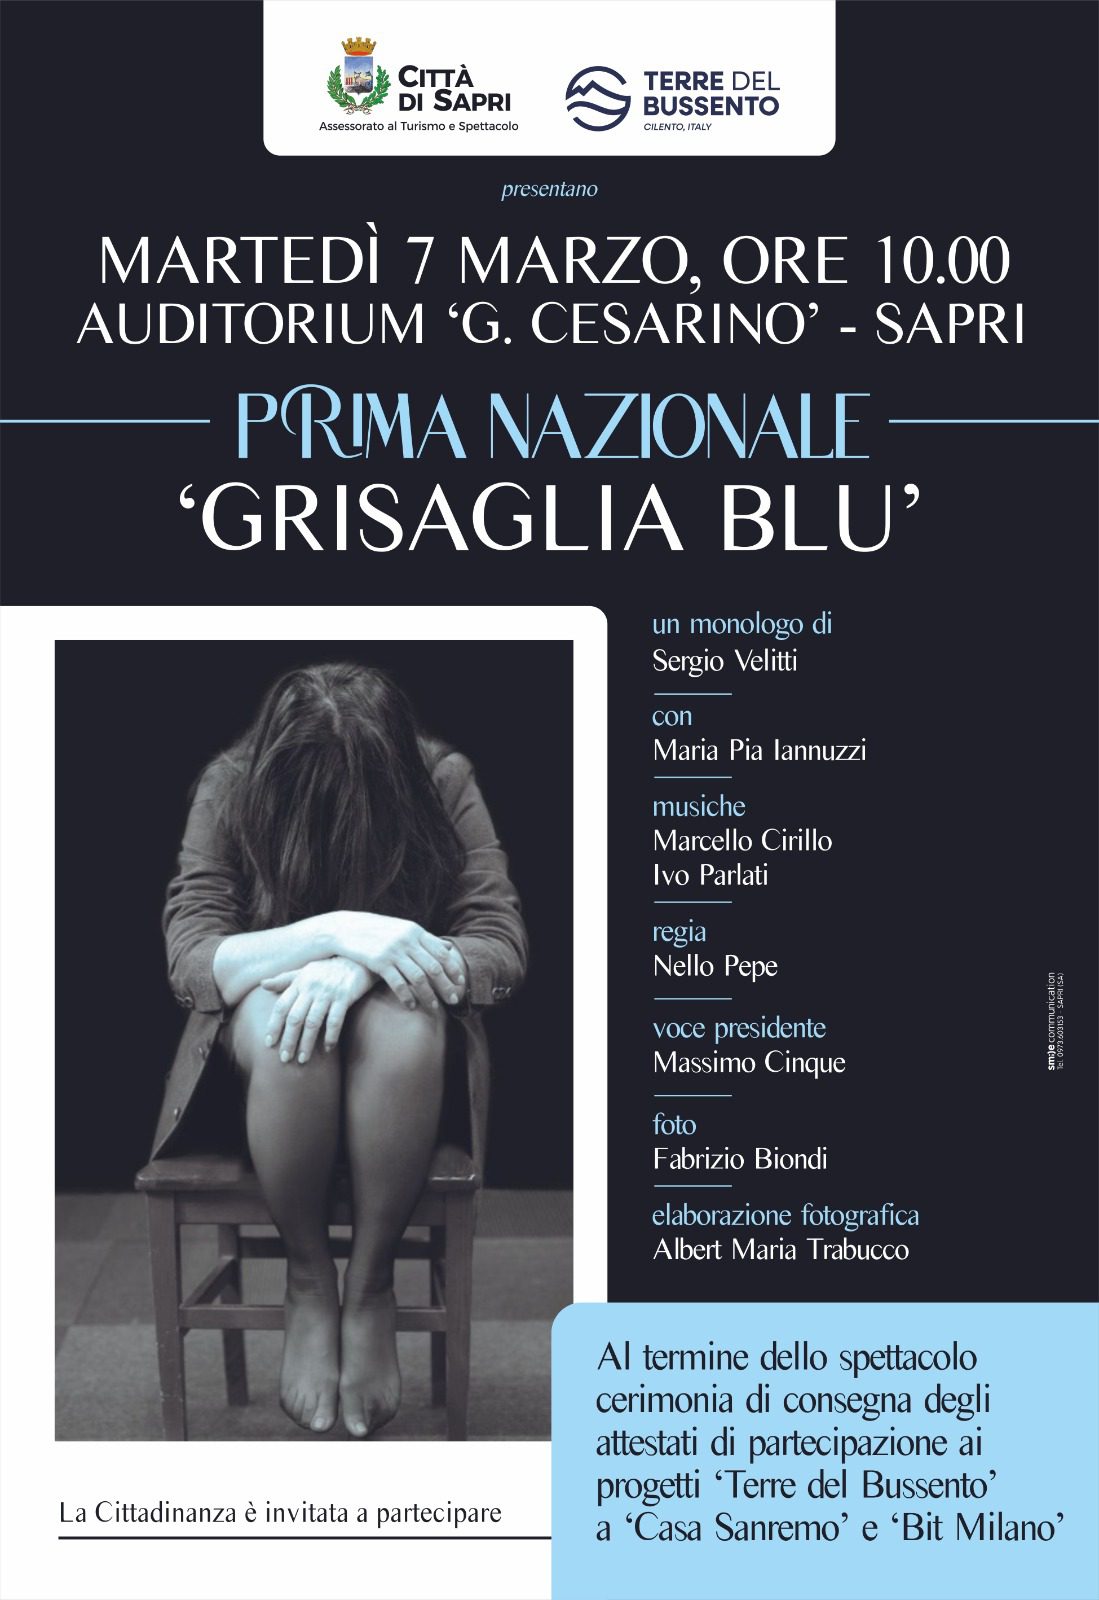 «Grisaglia Blu», a Sapri la messa in scena del monologo in prima nazionale